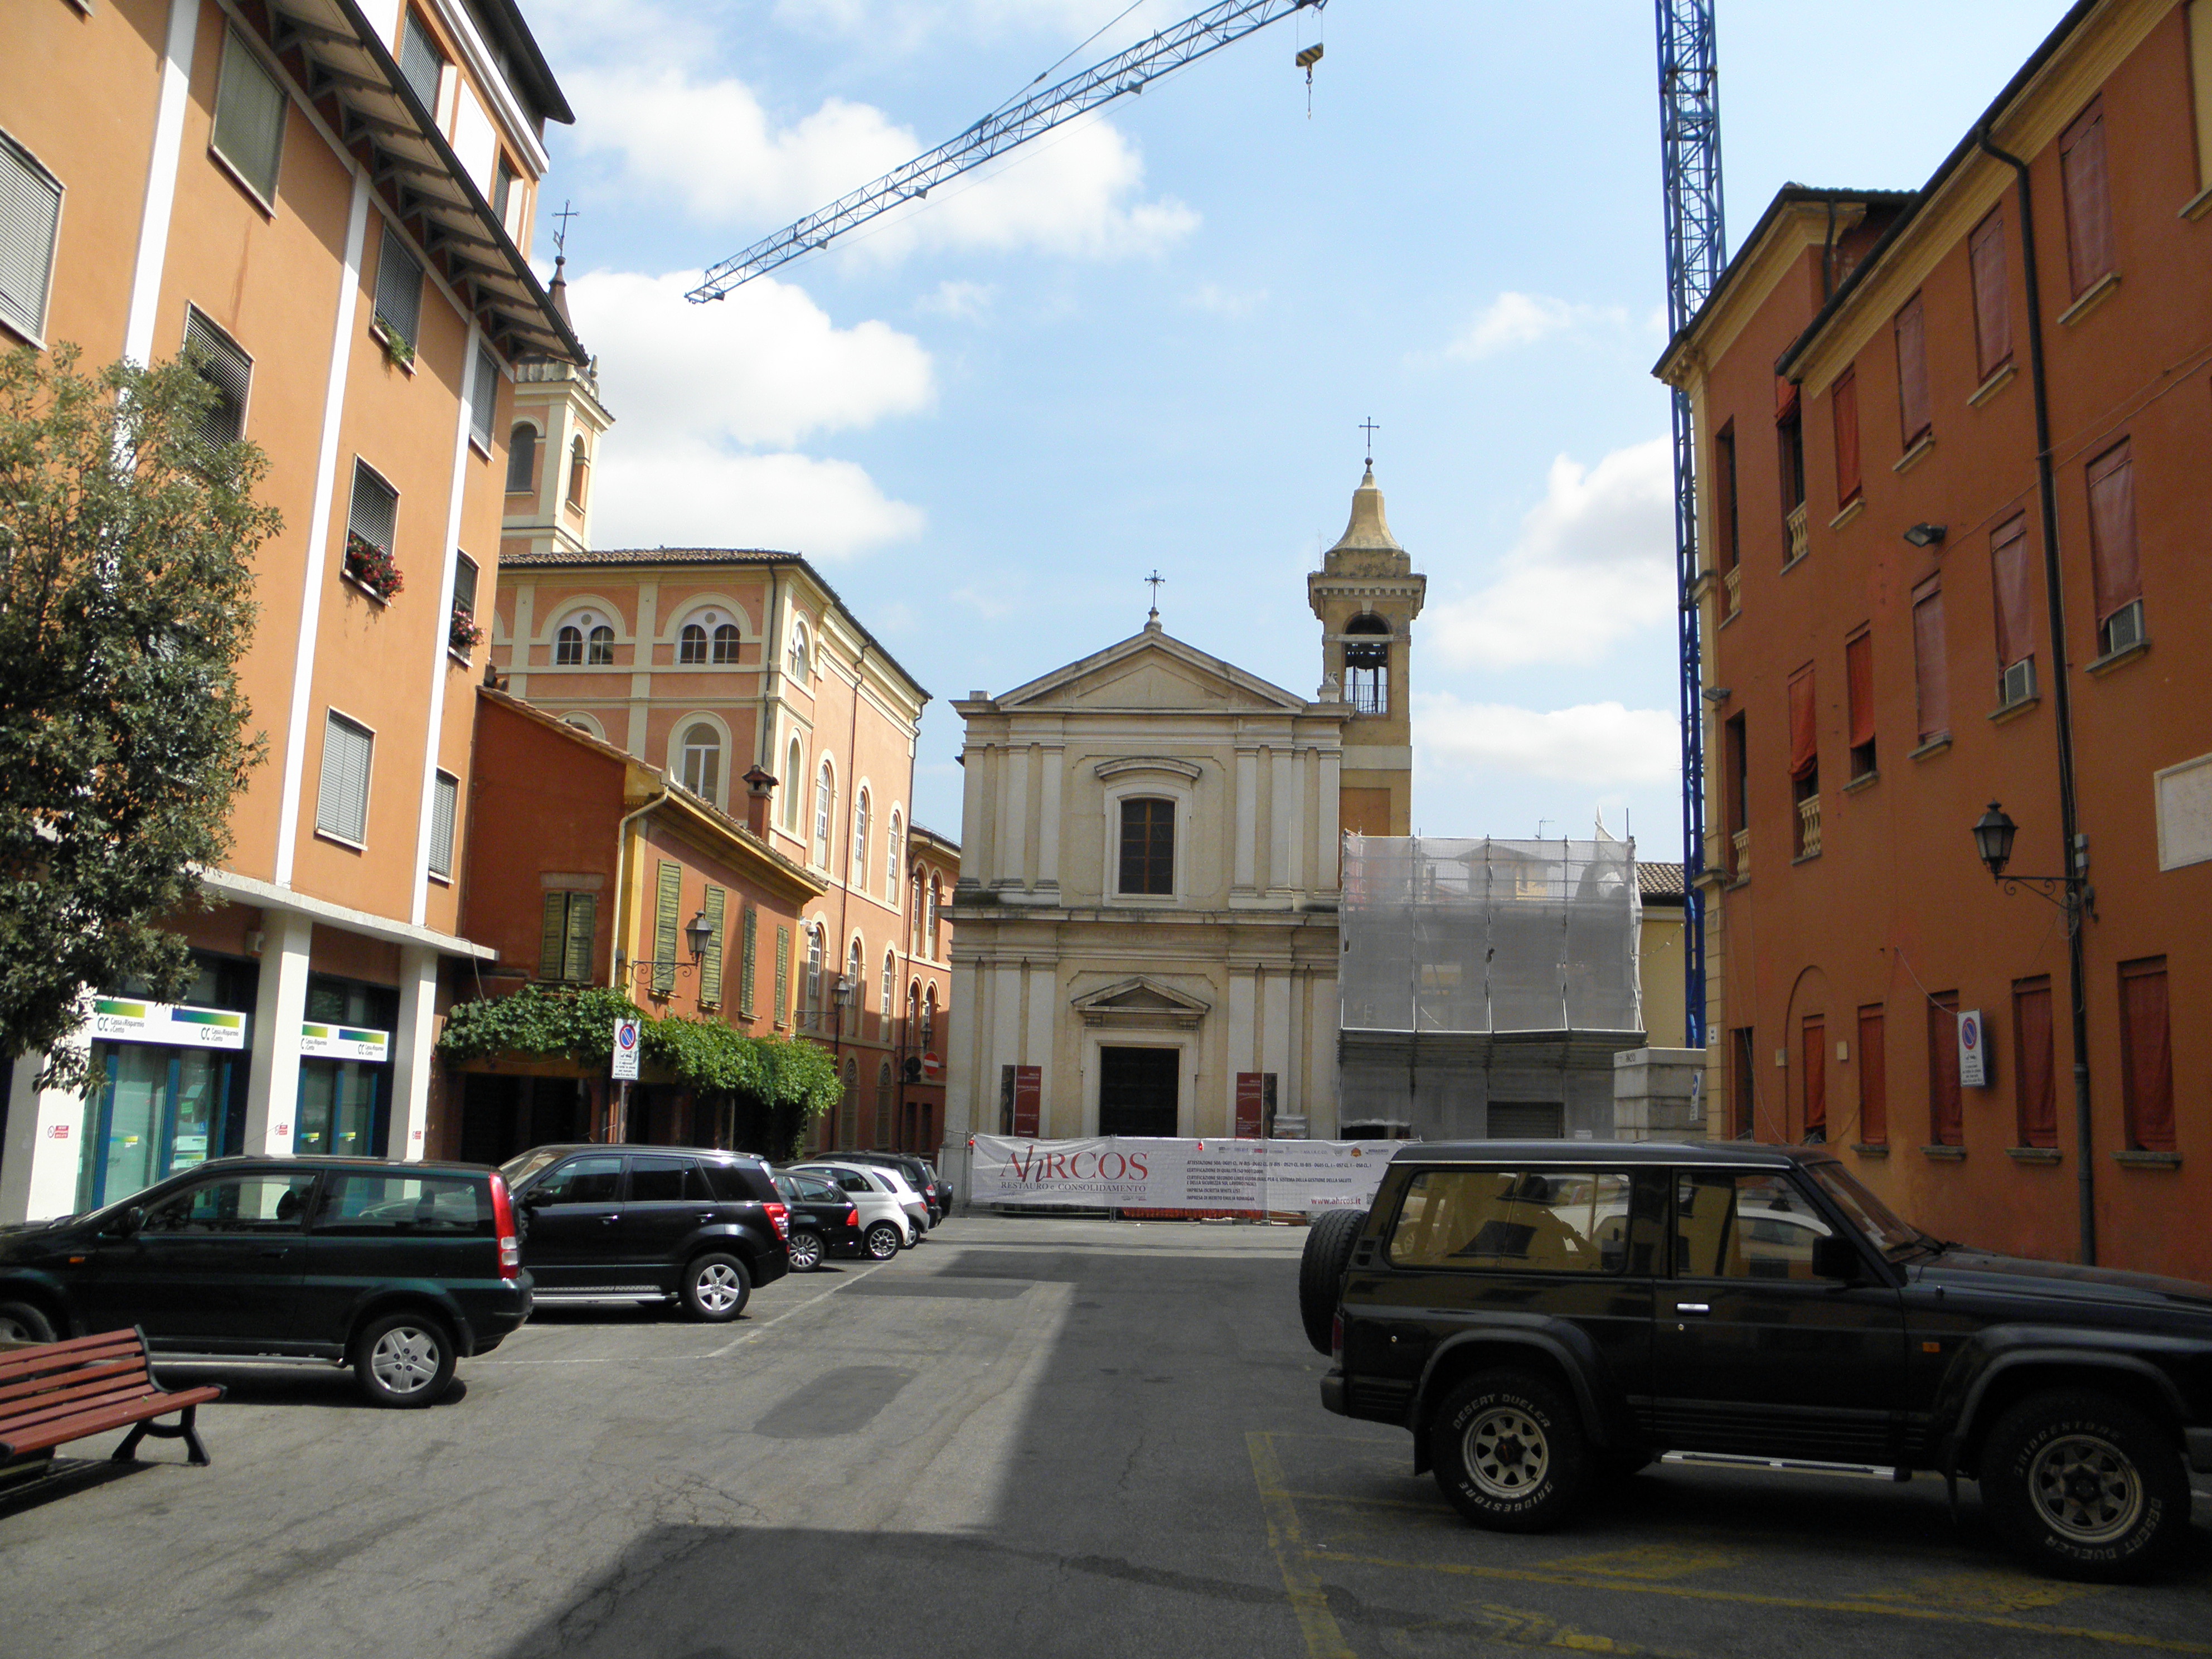  San Giovanni in Persiceto, Italy skank